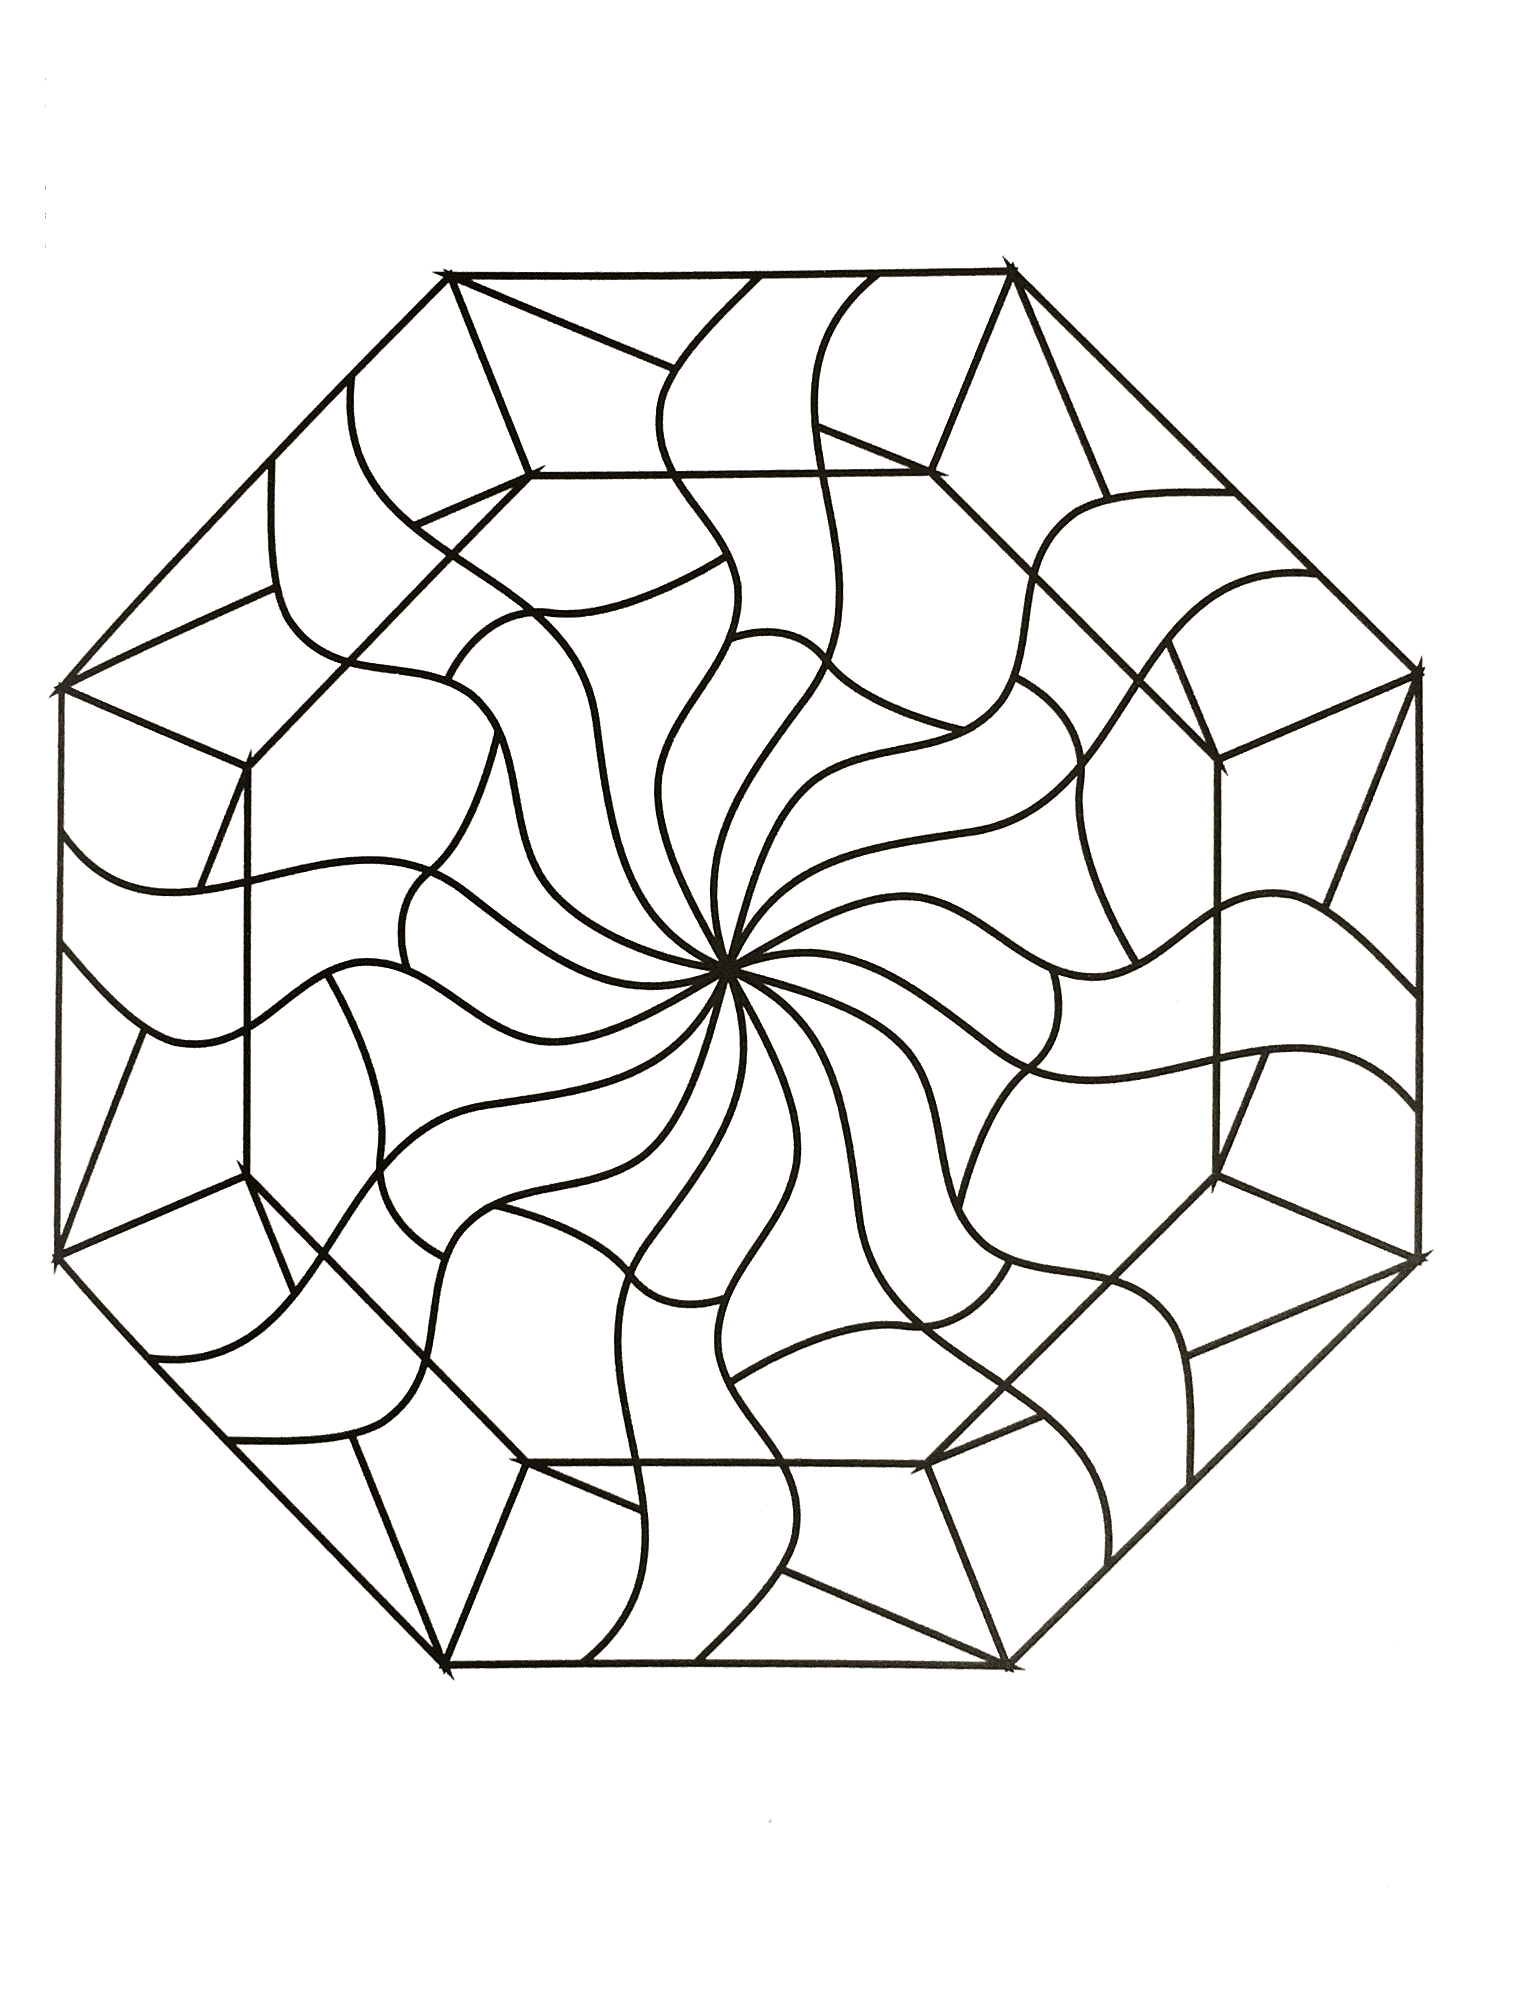 Mandala à télécharger avec une succession de formes prolongeant une superbe fleur au centre. Assez simple à colorier.